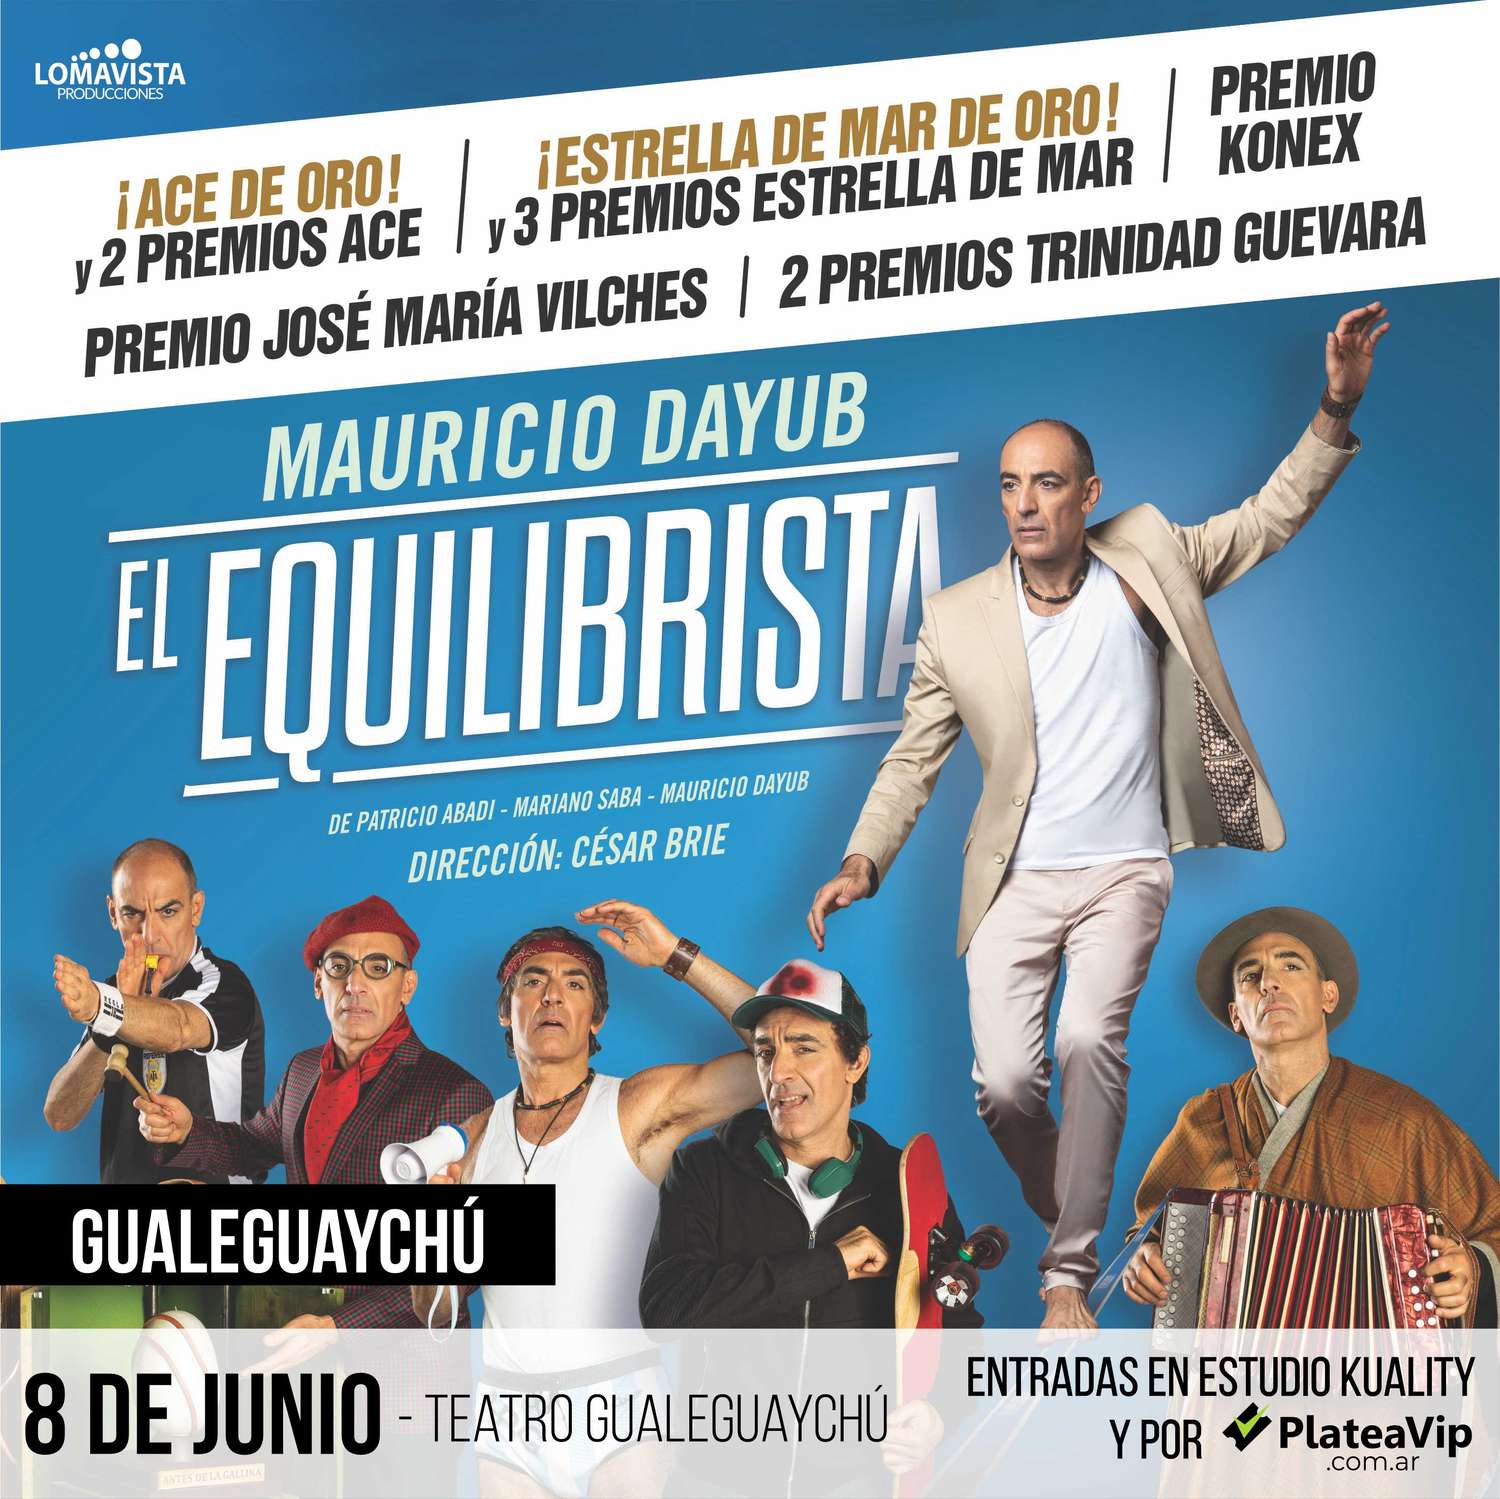 Llega a Gualeguaychú “El equilibrista”, la obra de Mauricio Dayub que ya vieron 300.000 espectadores